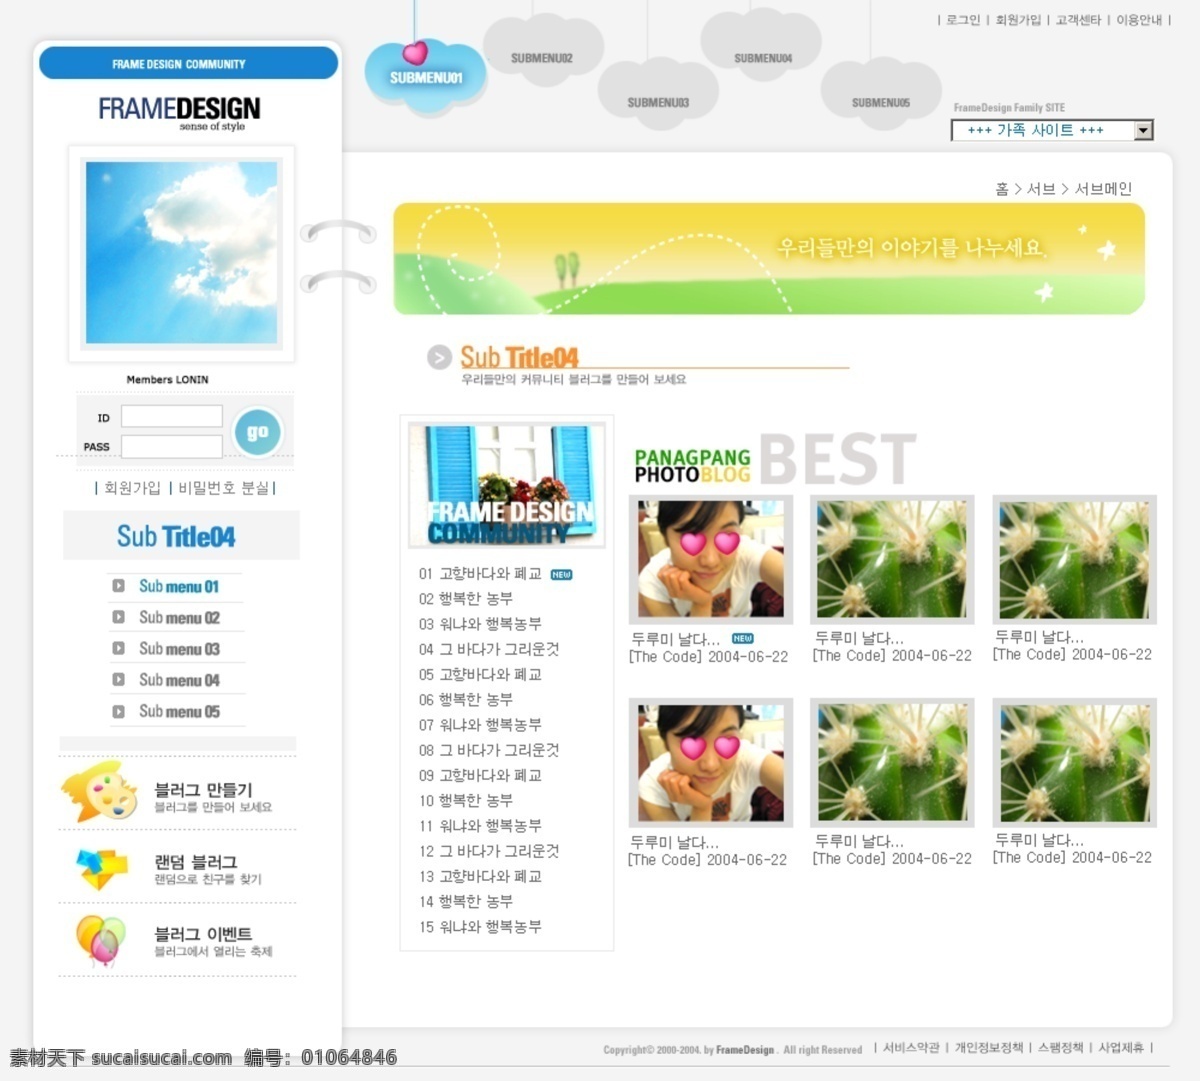 韩国 论坛 网页 厶惩乘夭南略 网页素材 网页模板